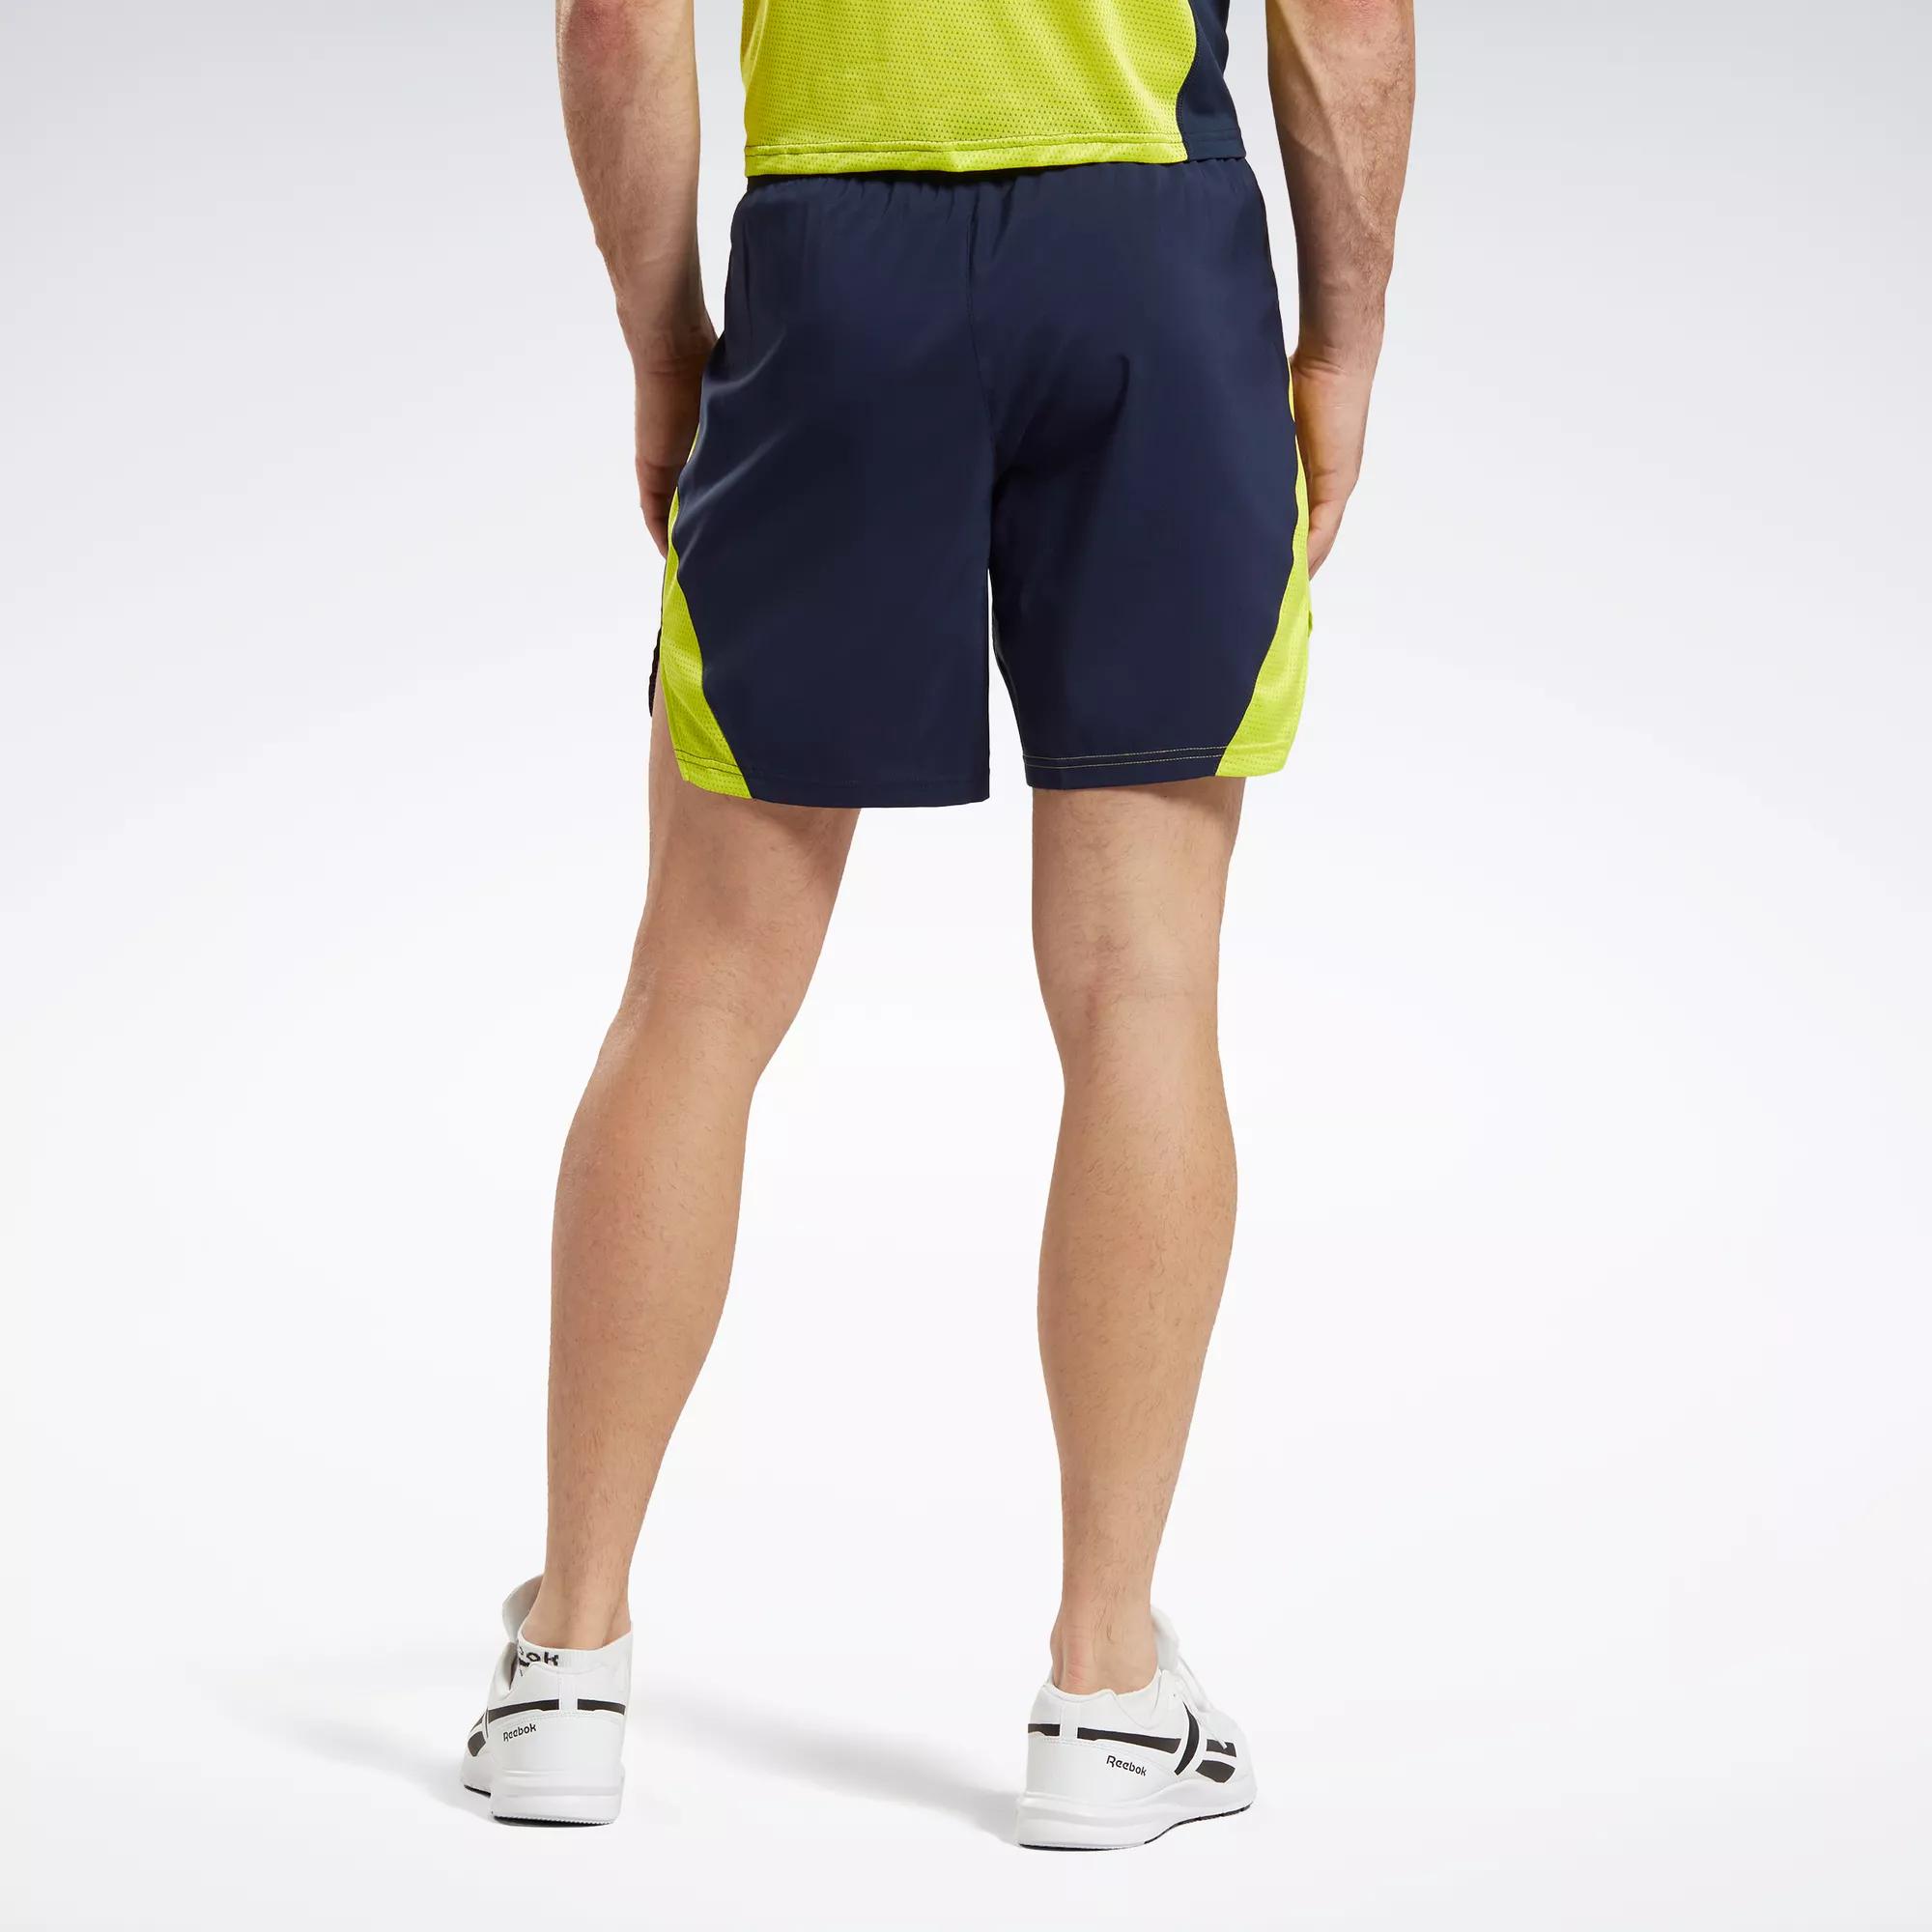 REEBOK Men's Performance Running Tights / Shorts